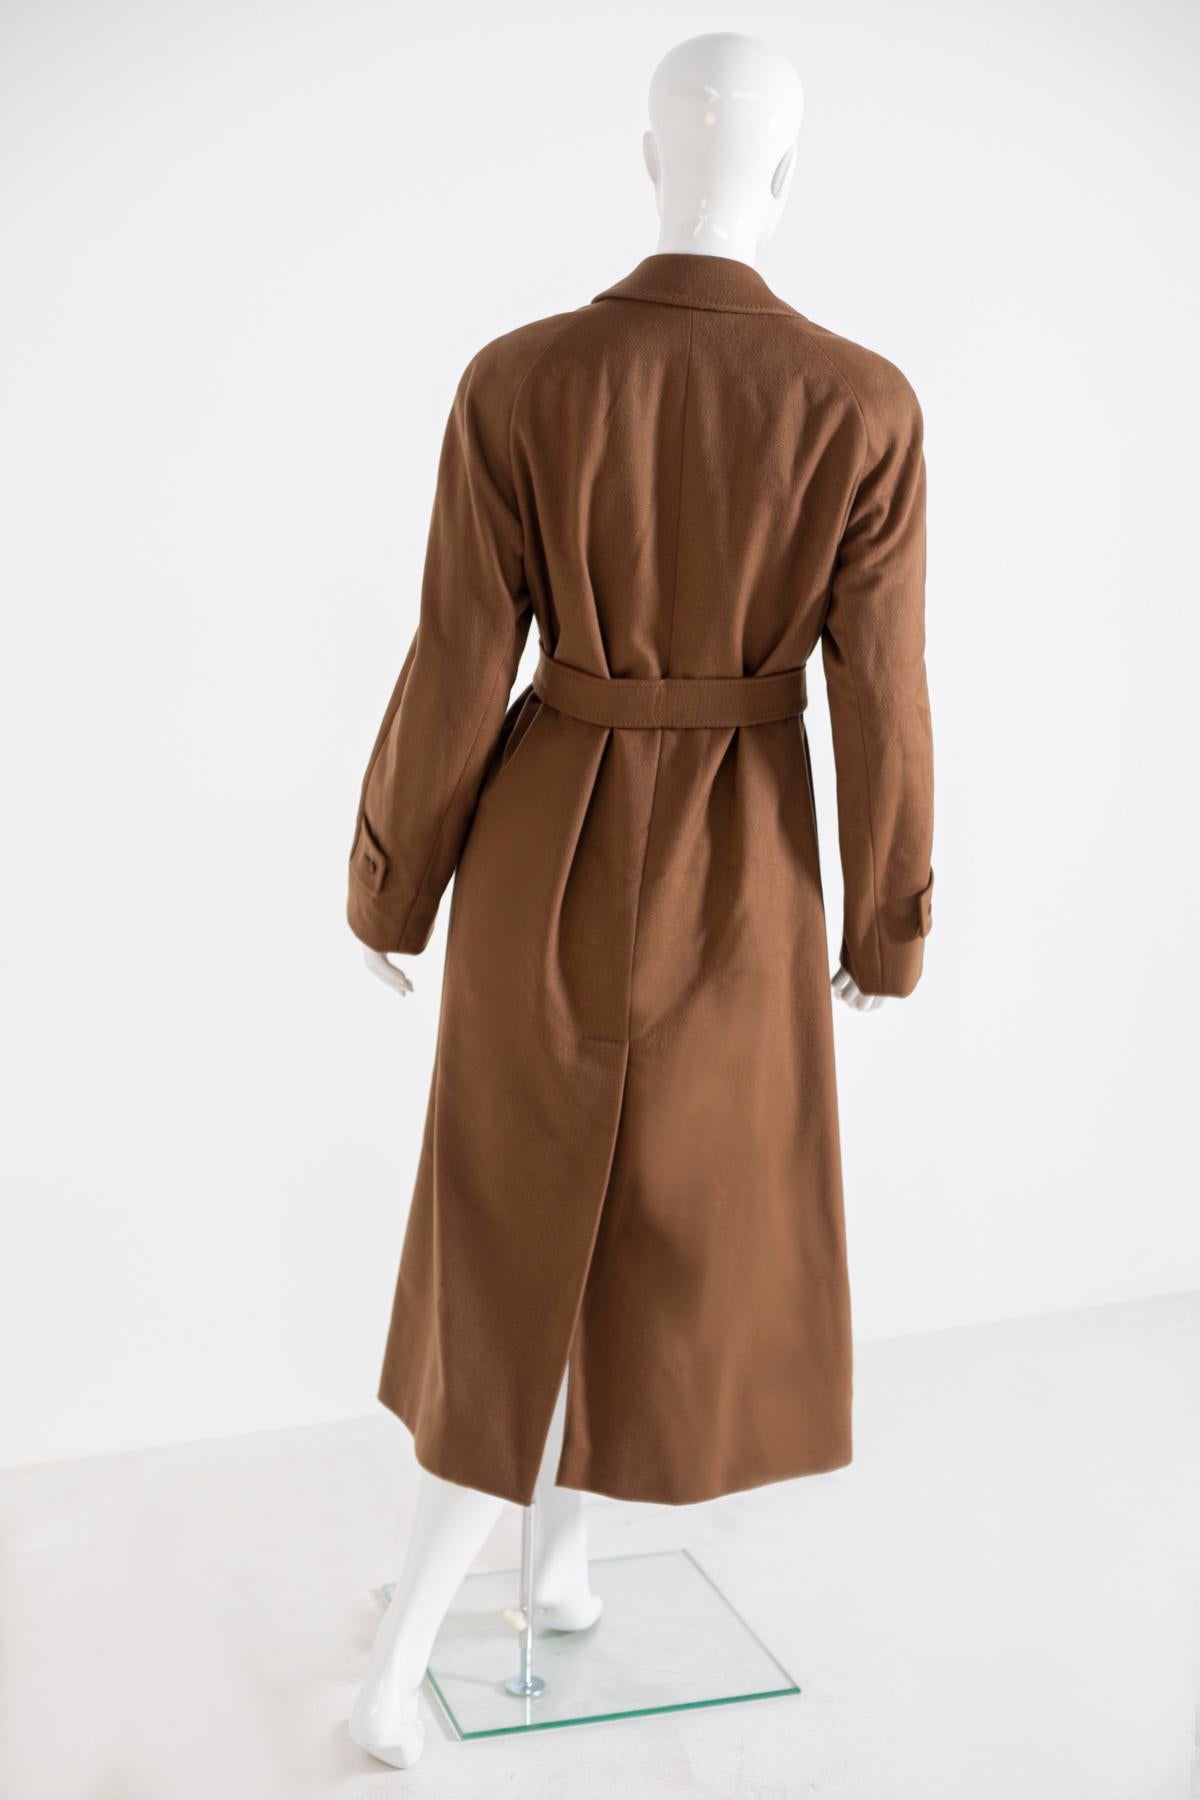 aquascutum camel coat